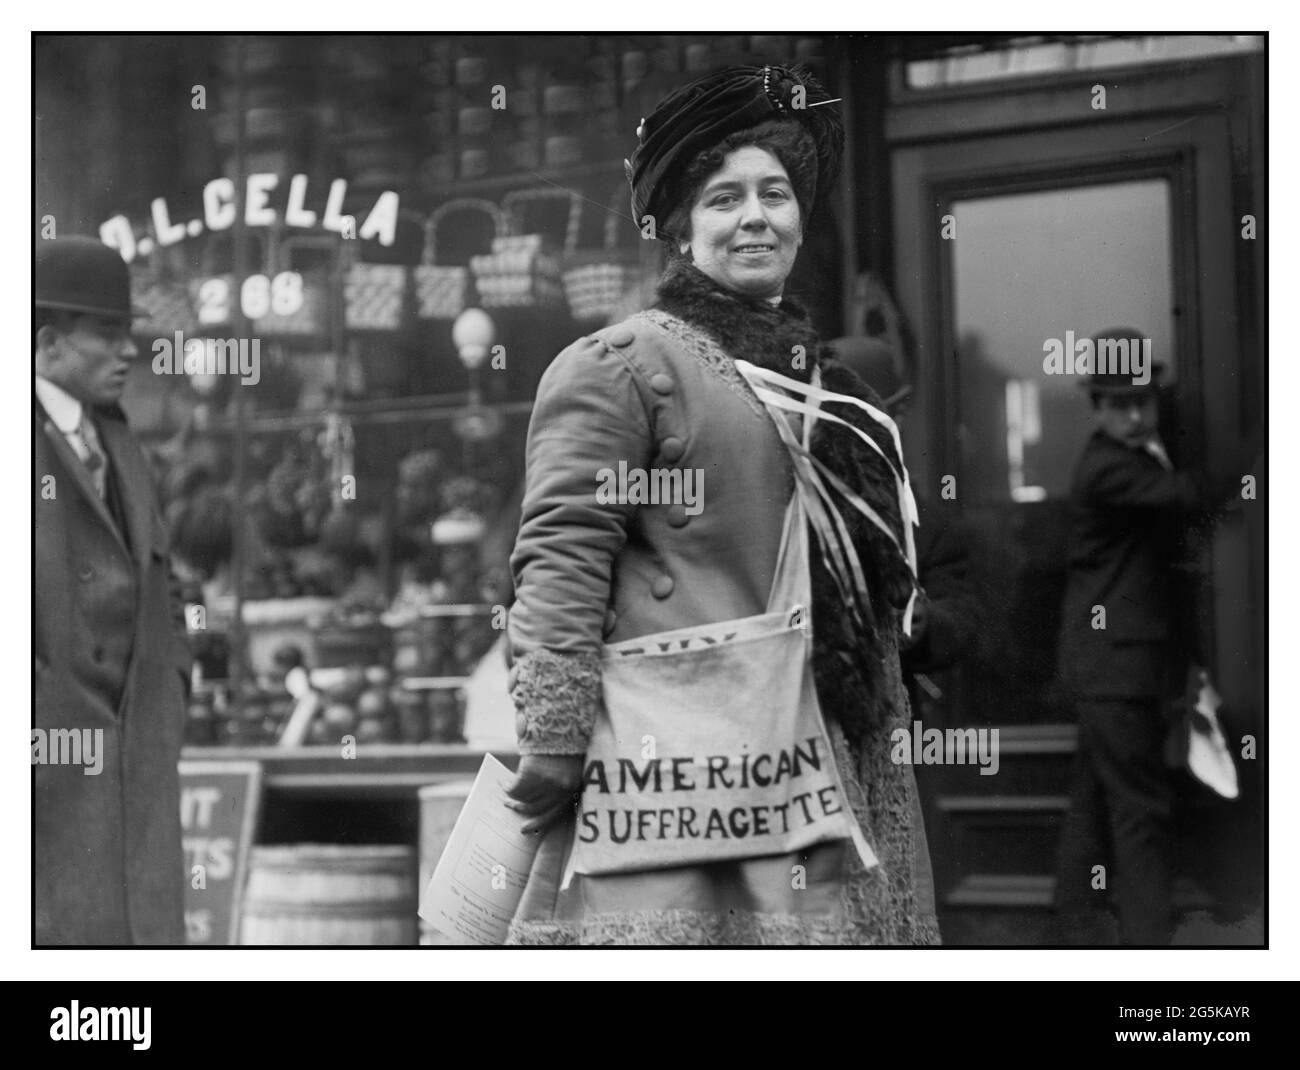 SUFFRAGETTE 1900’s MRS H. Riordan, suffragette vendant des bulletins de suffrage politique pour promouvoir le dix-neuvième amendement à la Constitution des États-Unis bain News Service, éditeur New York USA 1/27/10 Banque D'Images